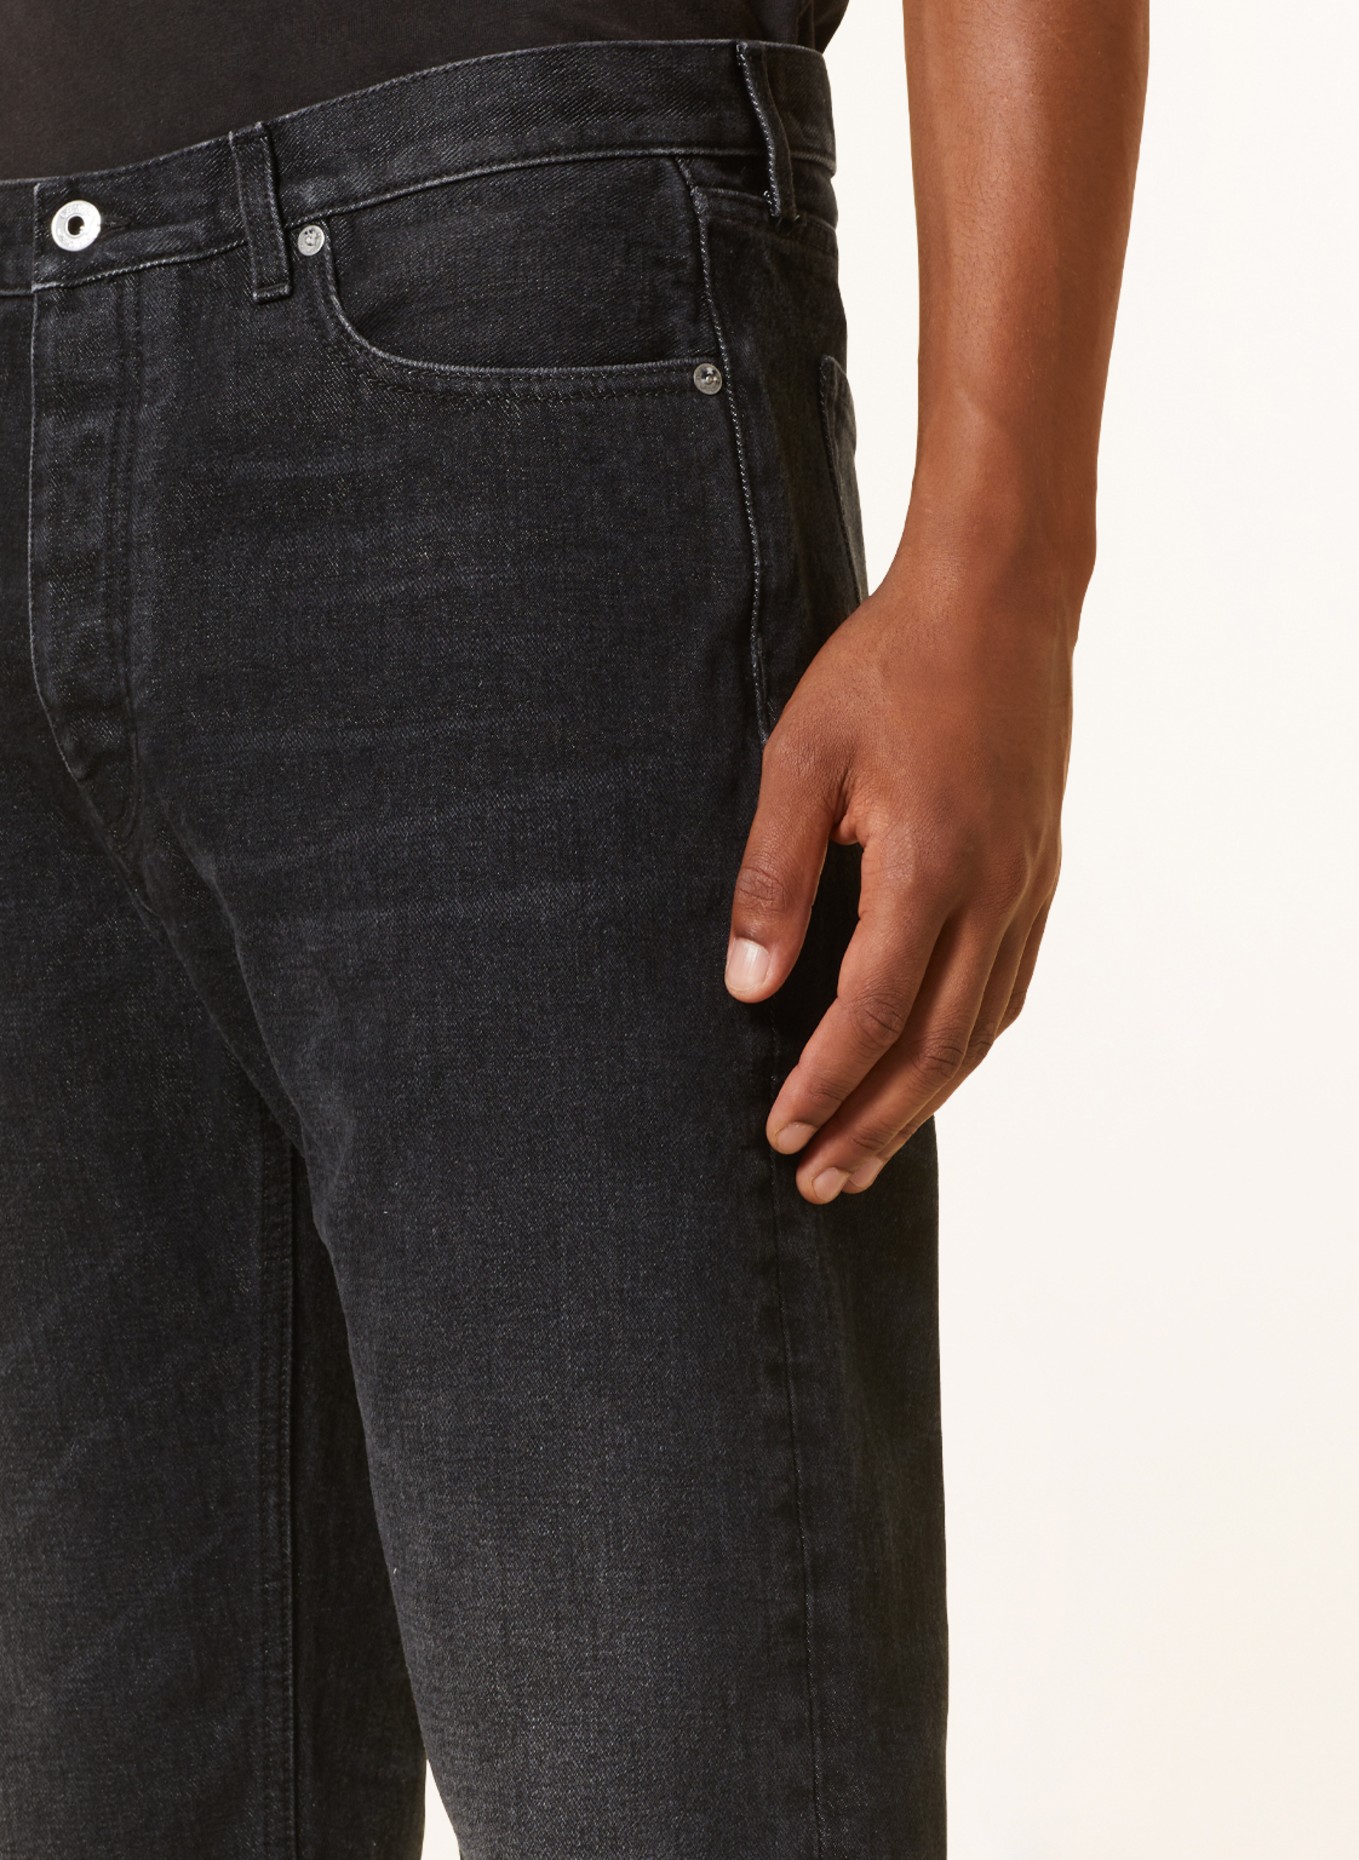 Off-White Jeans regular fit, Color: 0900 vintage grey no co (Image 5)